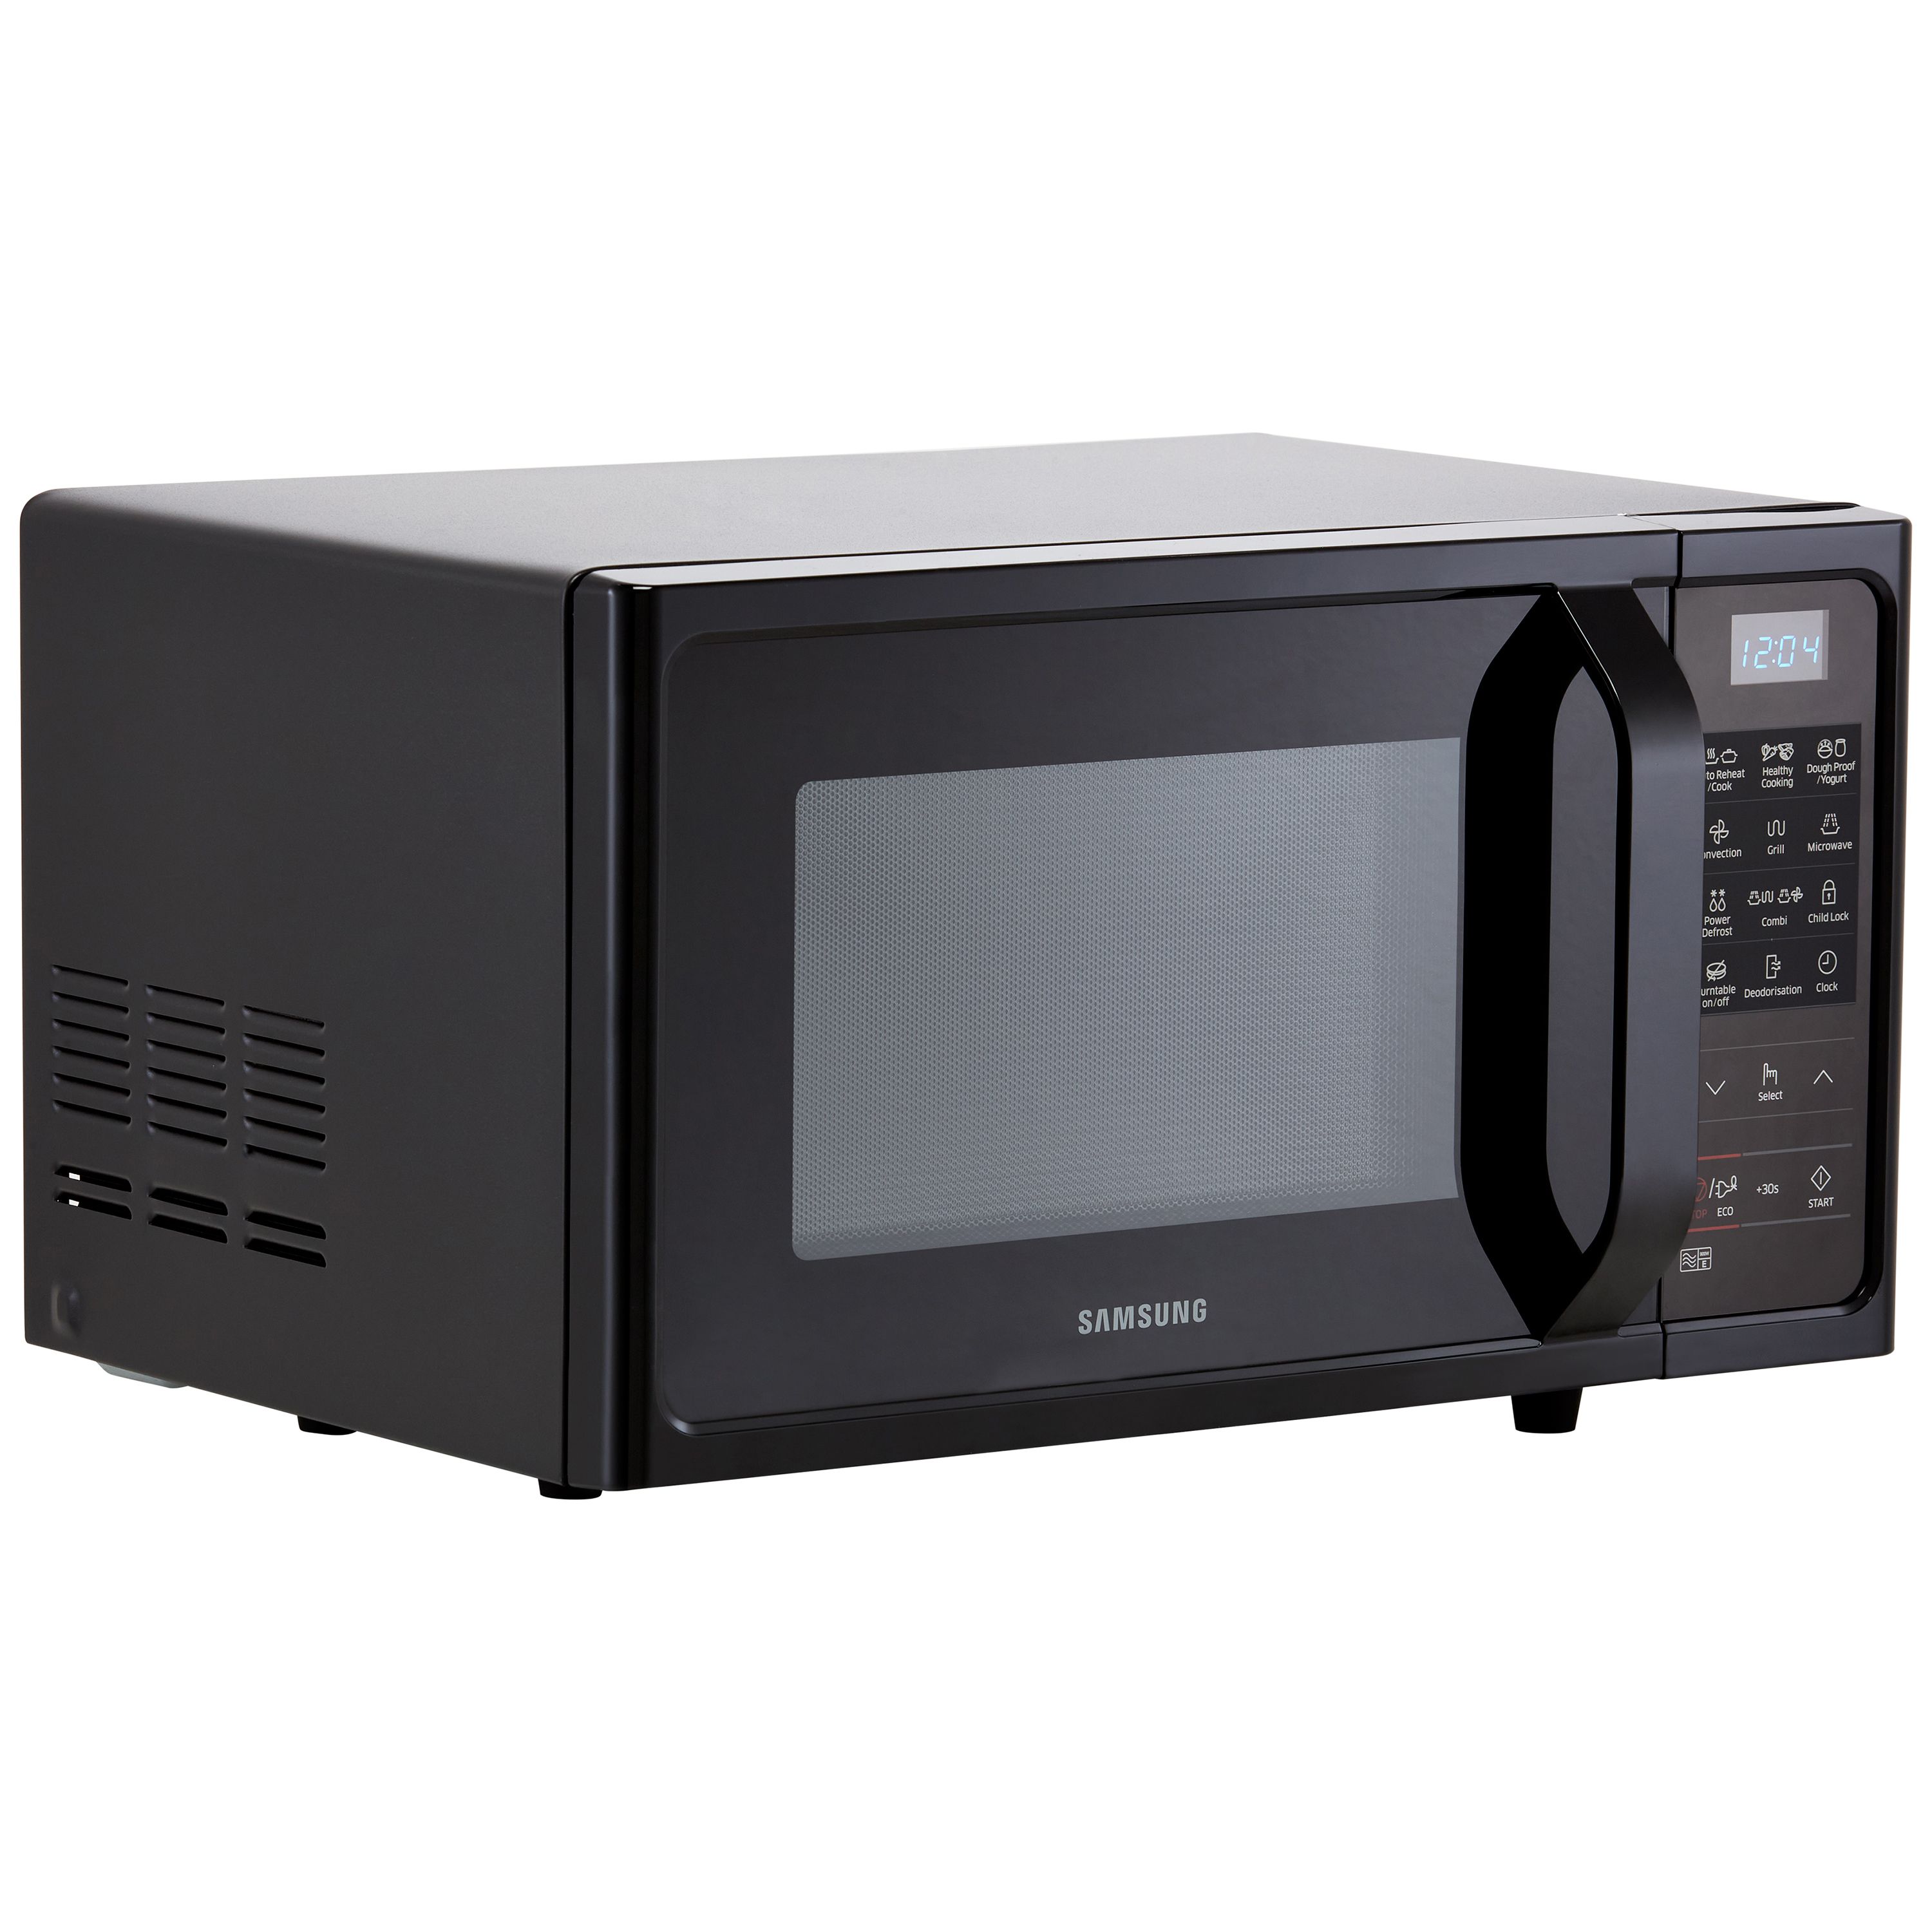 Samsung MW5000H  MC28H5013AK/EU_BK 28L Freestanding Microwave - Black